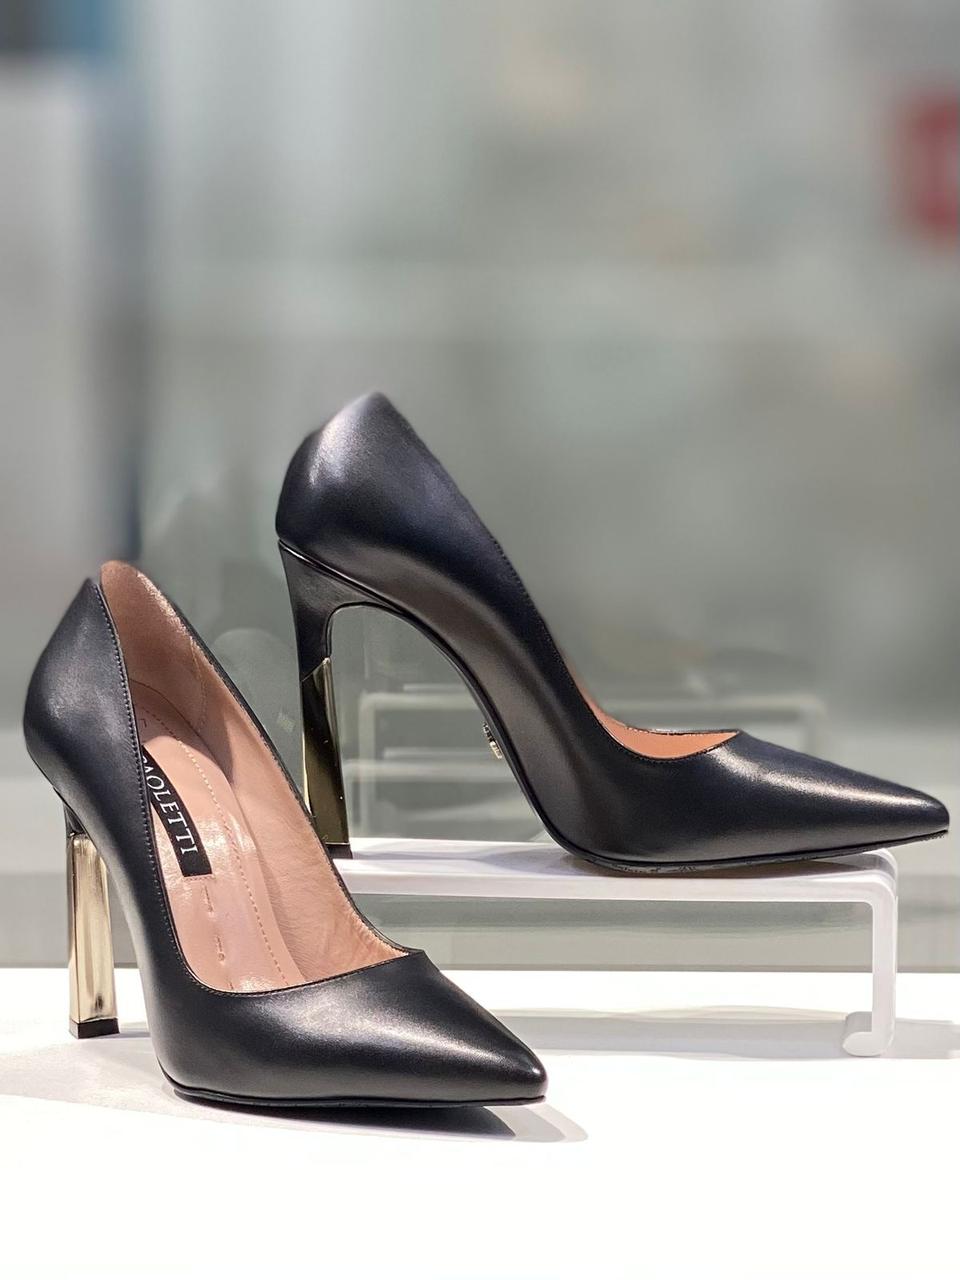 Модные туфли "Paoletti". Женская обувь  новая коллекция в Алматы.